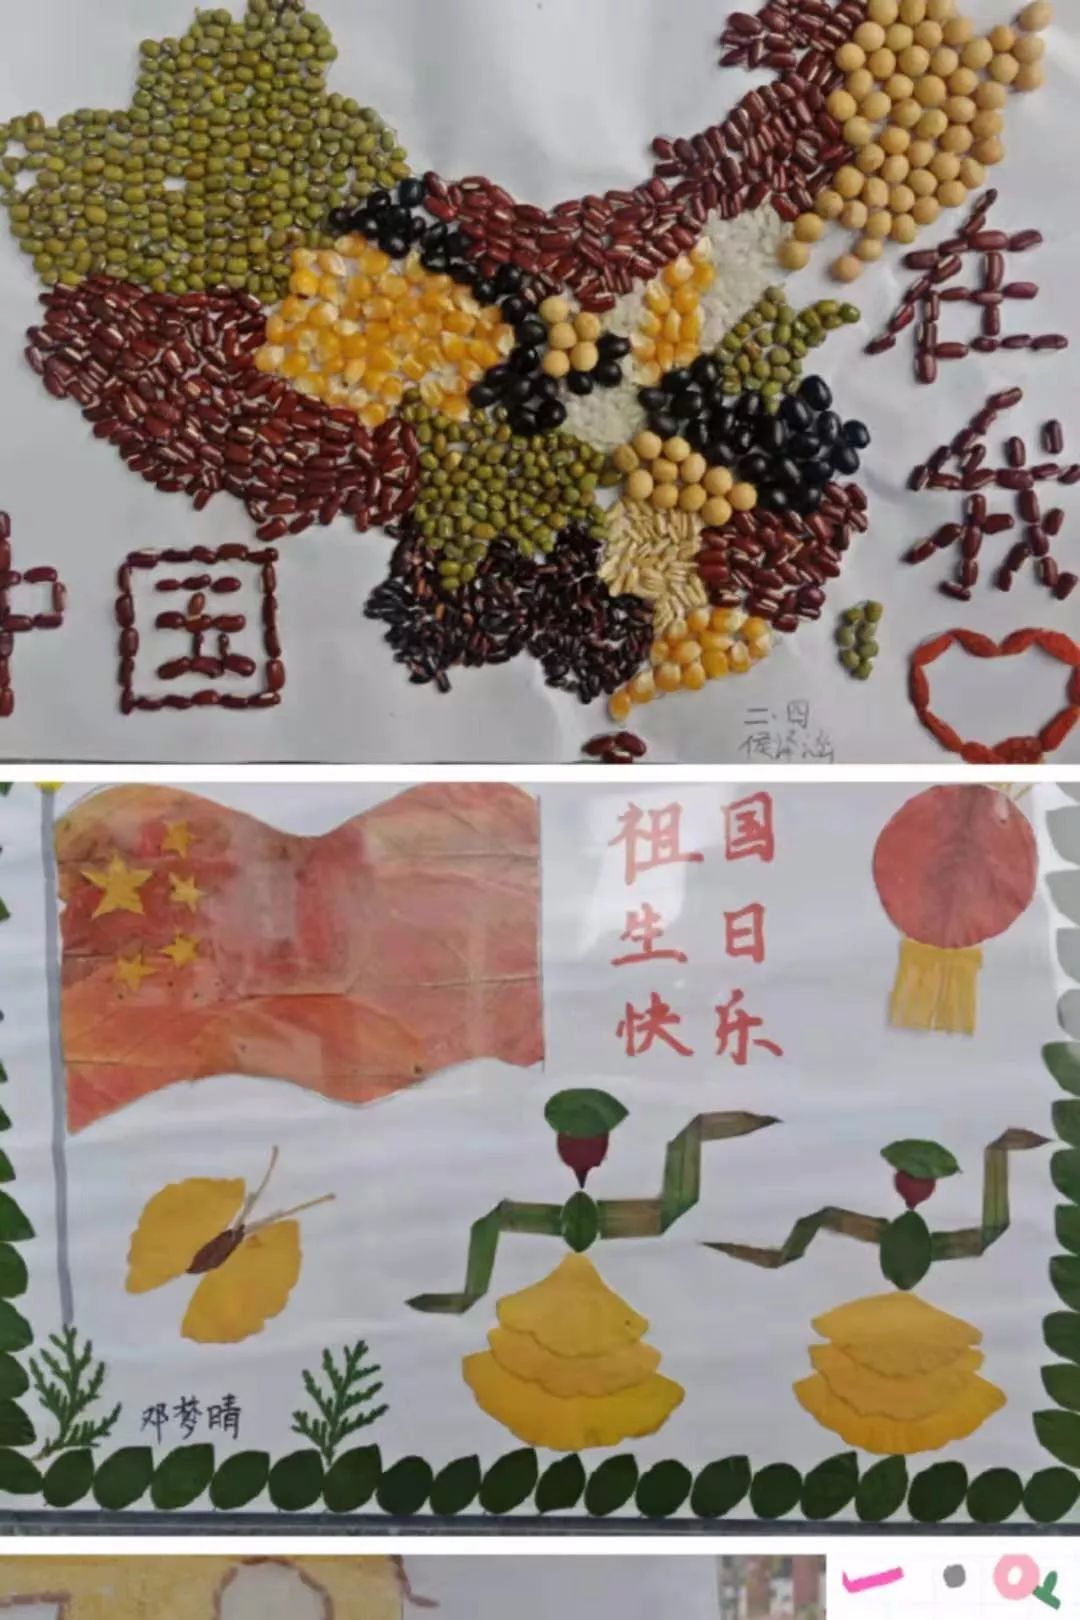 【青春向党】岱岳实验中学小学校区开展"向祖国70周年献礼"种子粘贴画